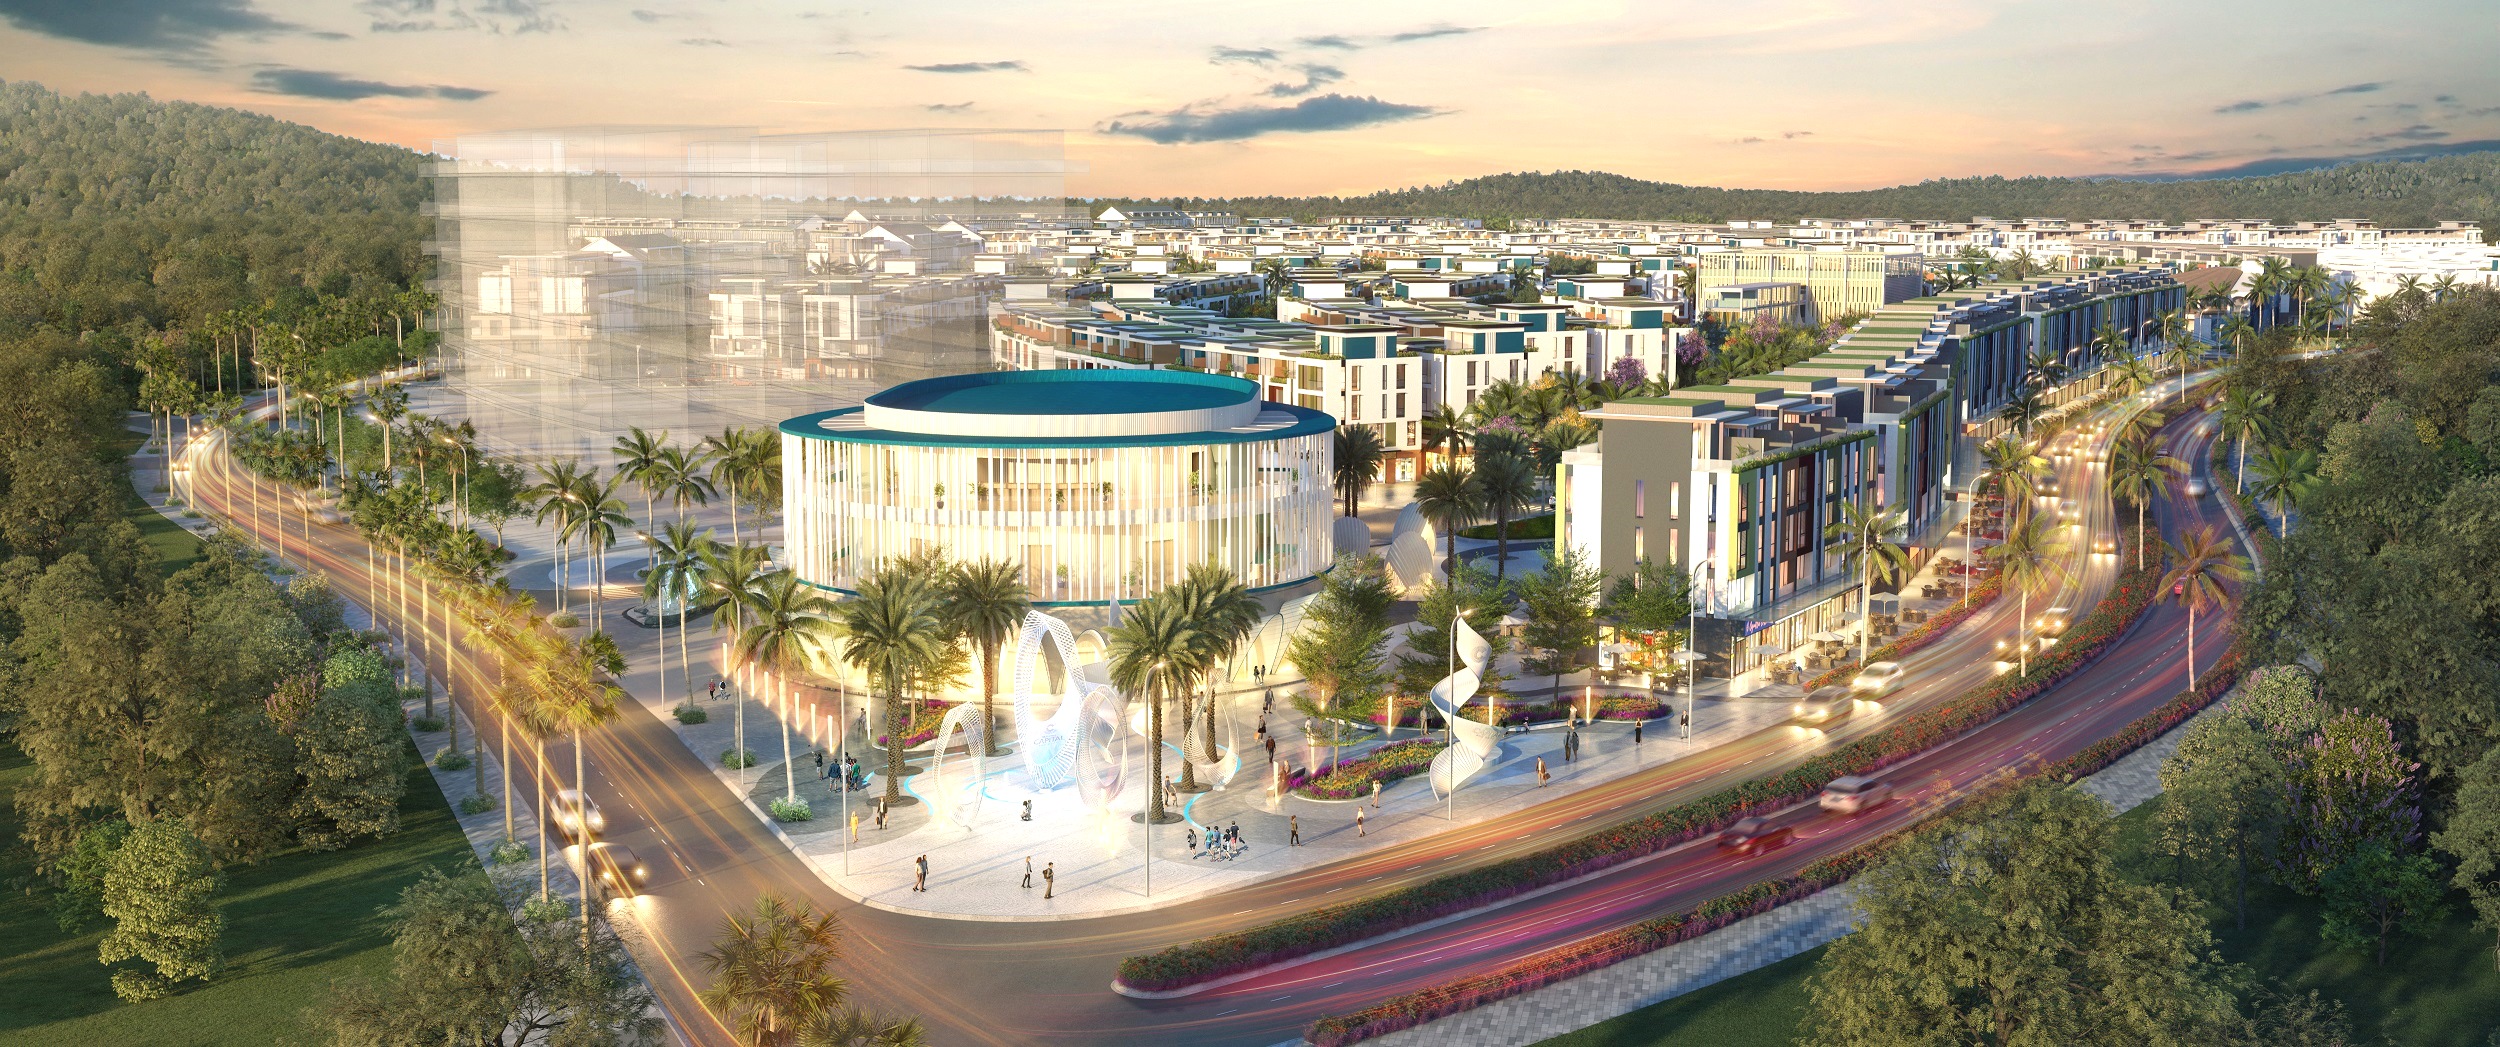 Đô thị Phú Quốc sẽ là tâm điểm đầu tư 2021 - Ảnh 2